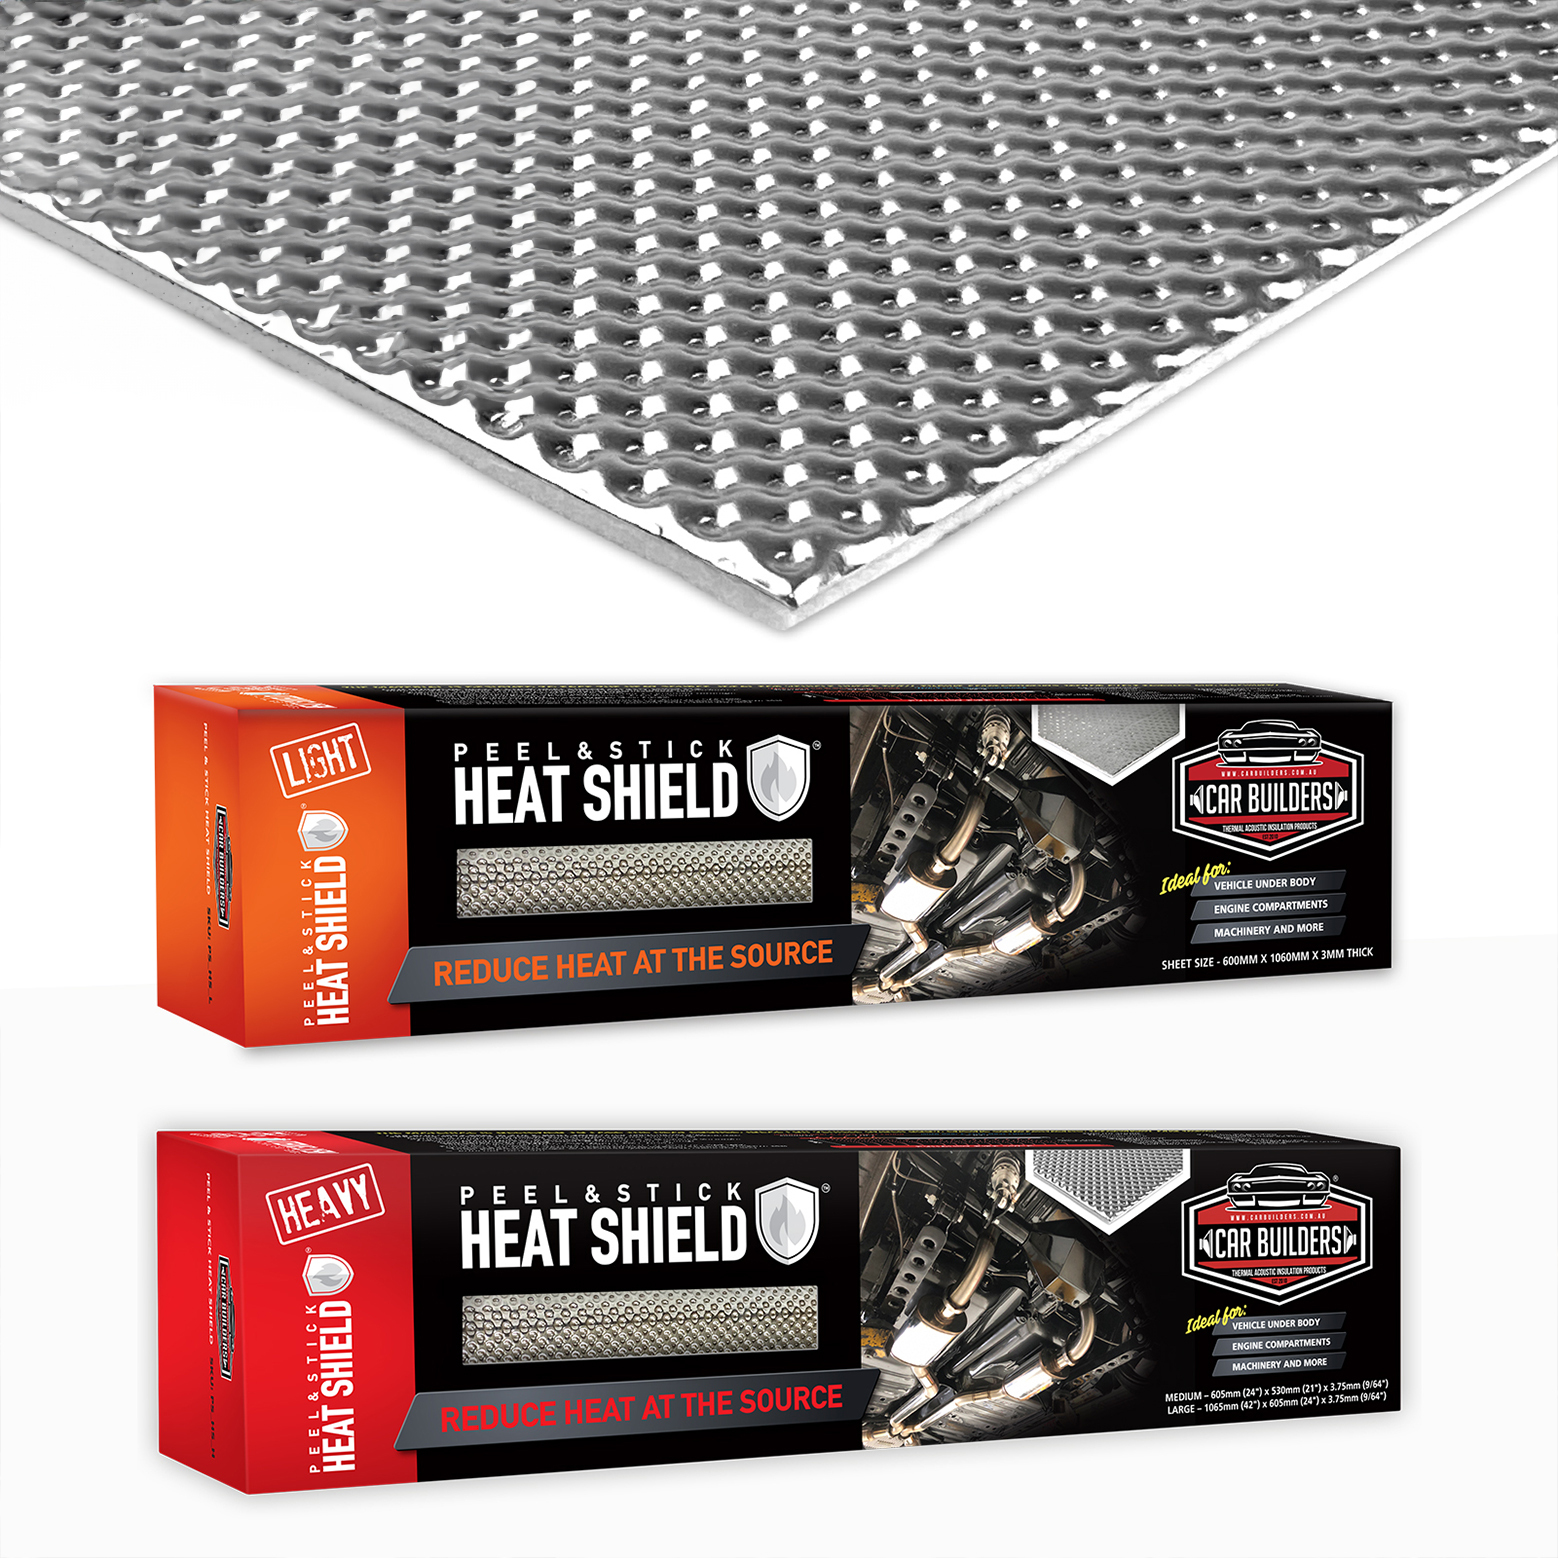 Peel & Stick Heat Shield Light 300mm x 520mm